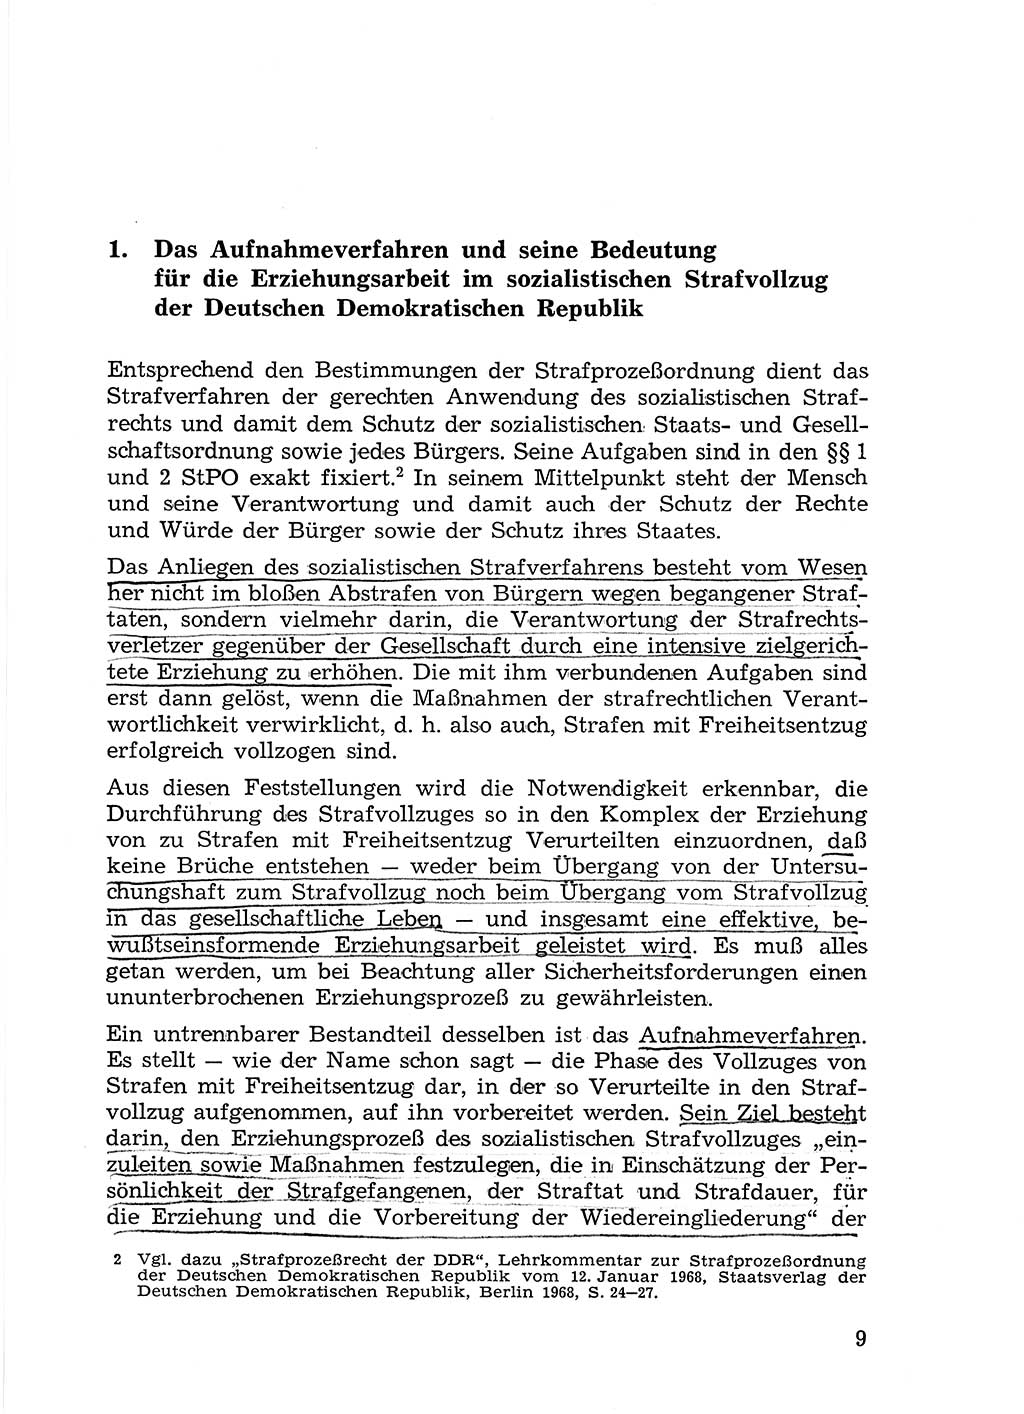 Sozialistischer Strafvollzug (SV) [Deutsche Demokratische Republik (DDR)] 1972, Seite 9 (Soz. SV DDR 1972, S. 9)